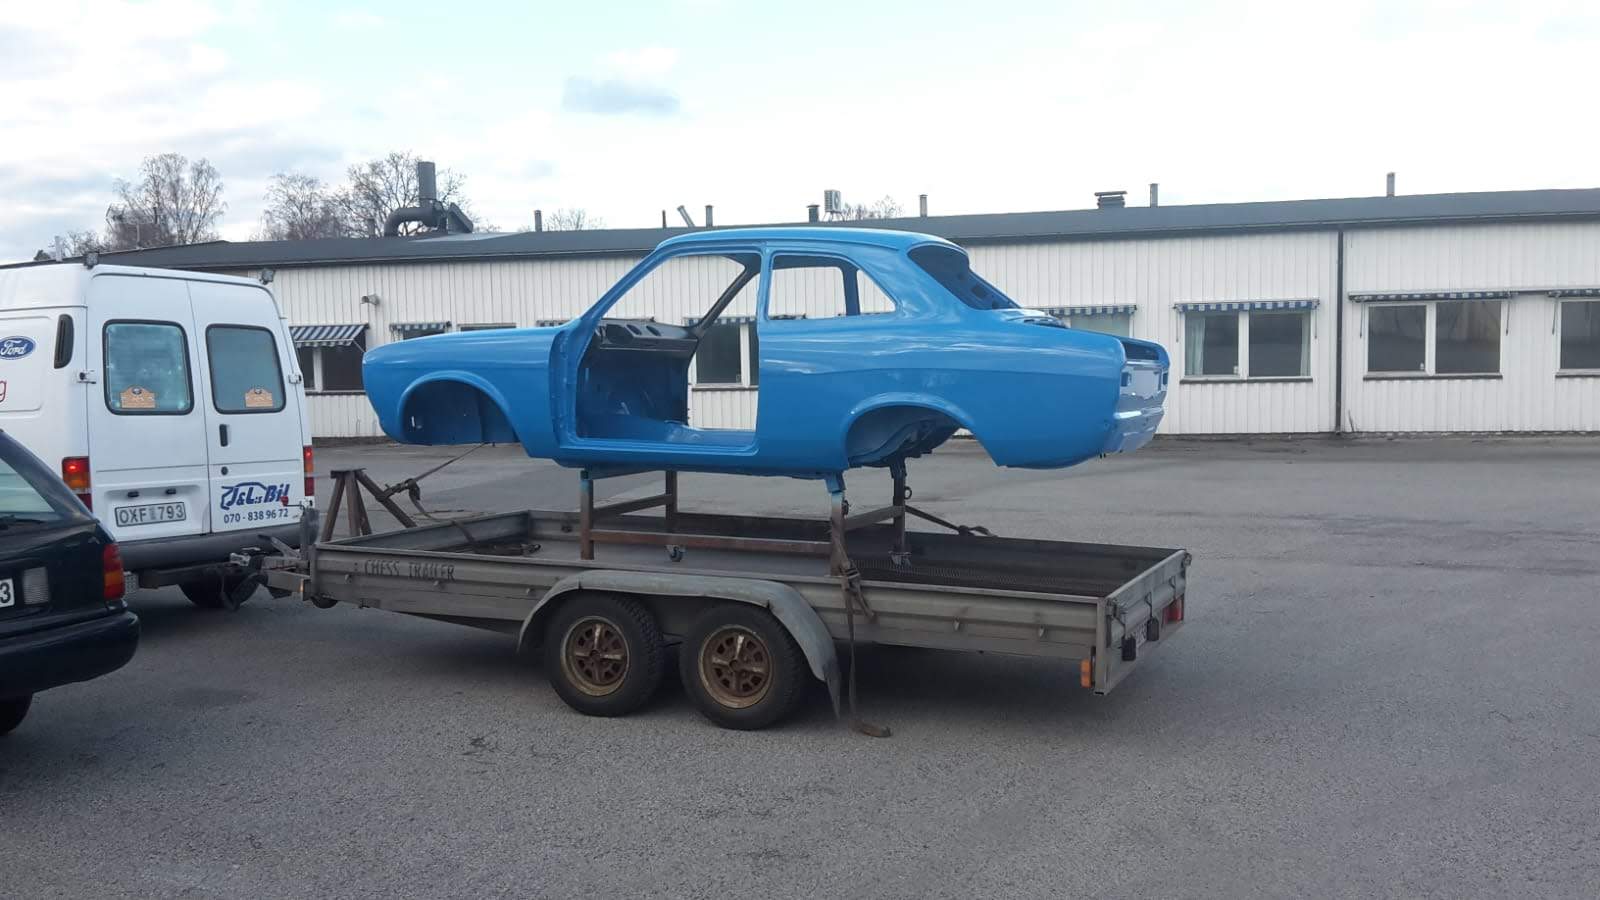 den gamle Ford Escort Mexico sendes til Sverige